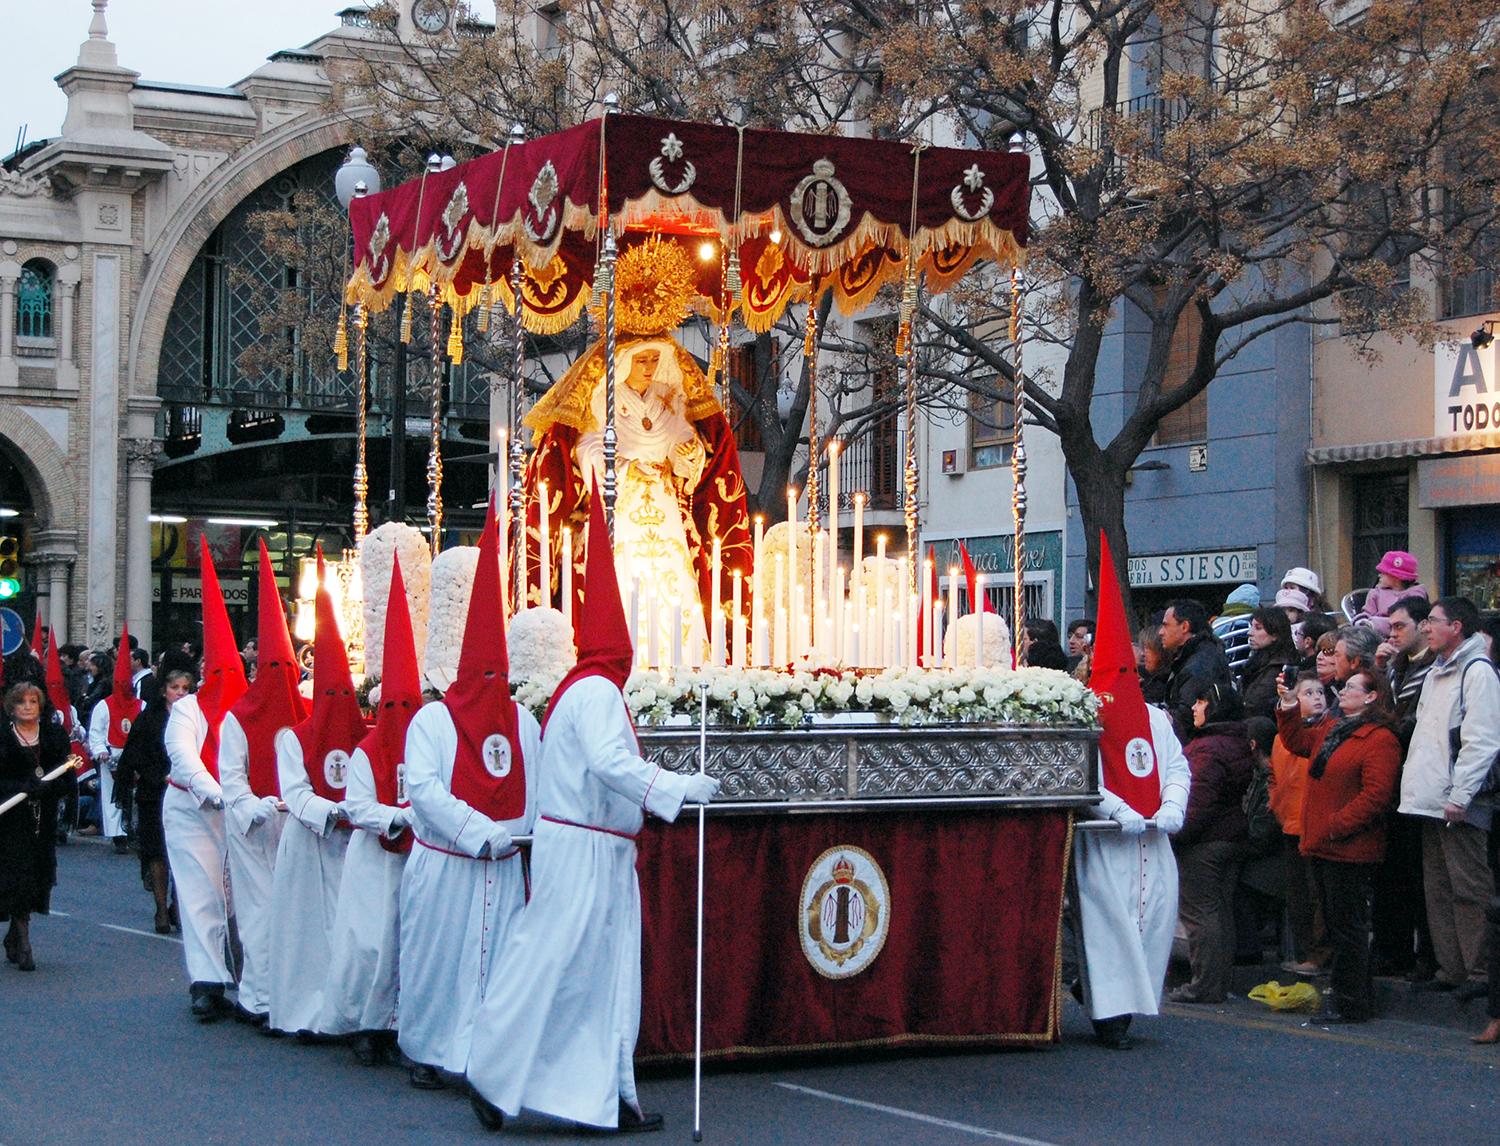 Espanjan Andalusiassa pyhän viikon Semana Santa -kulkueiden korkeat ja värikkäät päähineet ovat symboli katumuksesta.